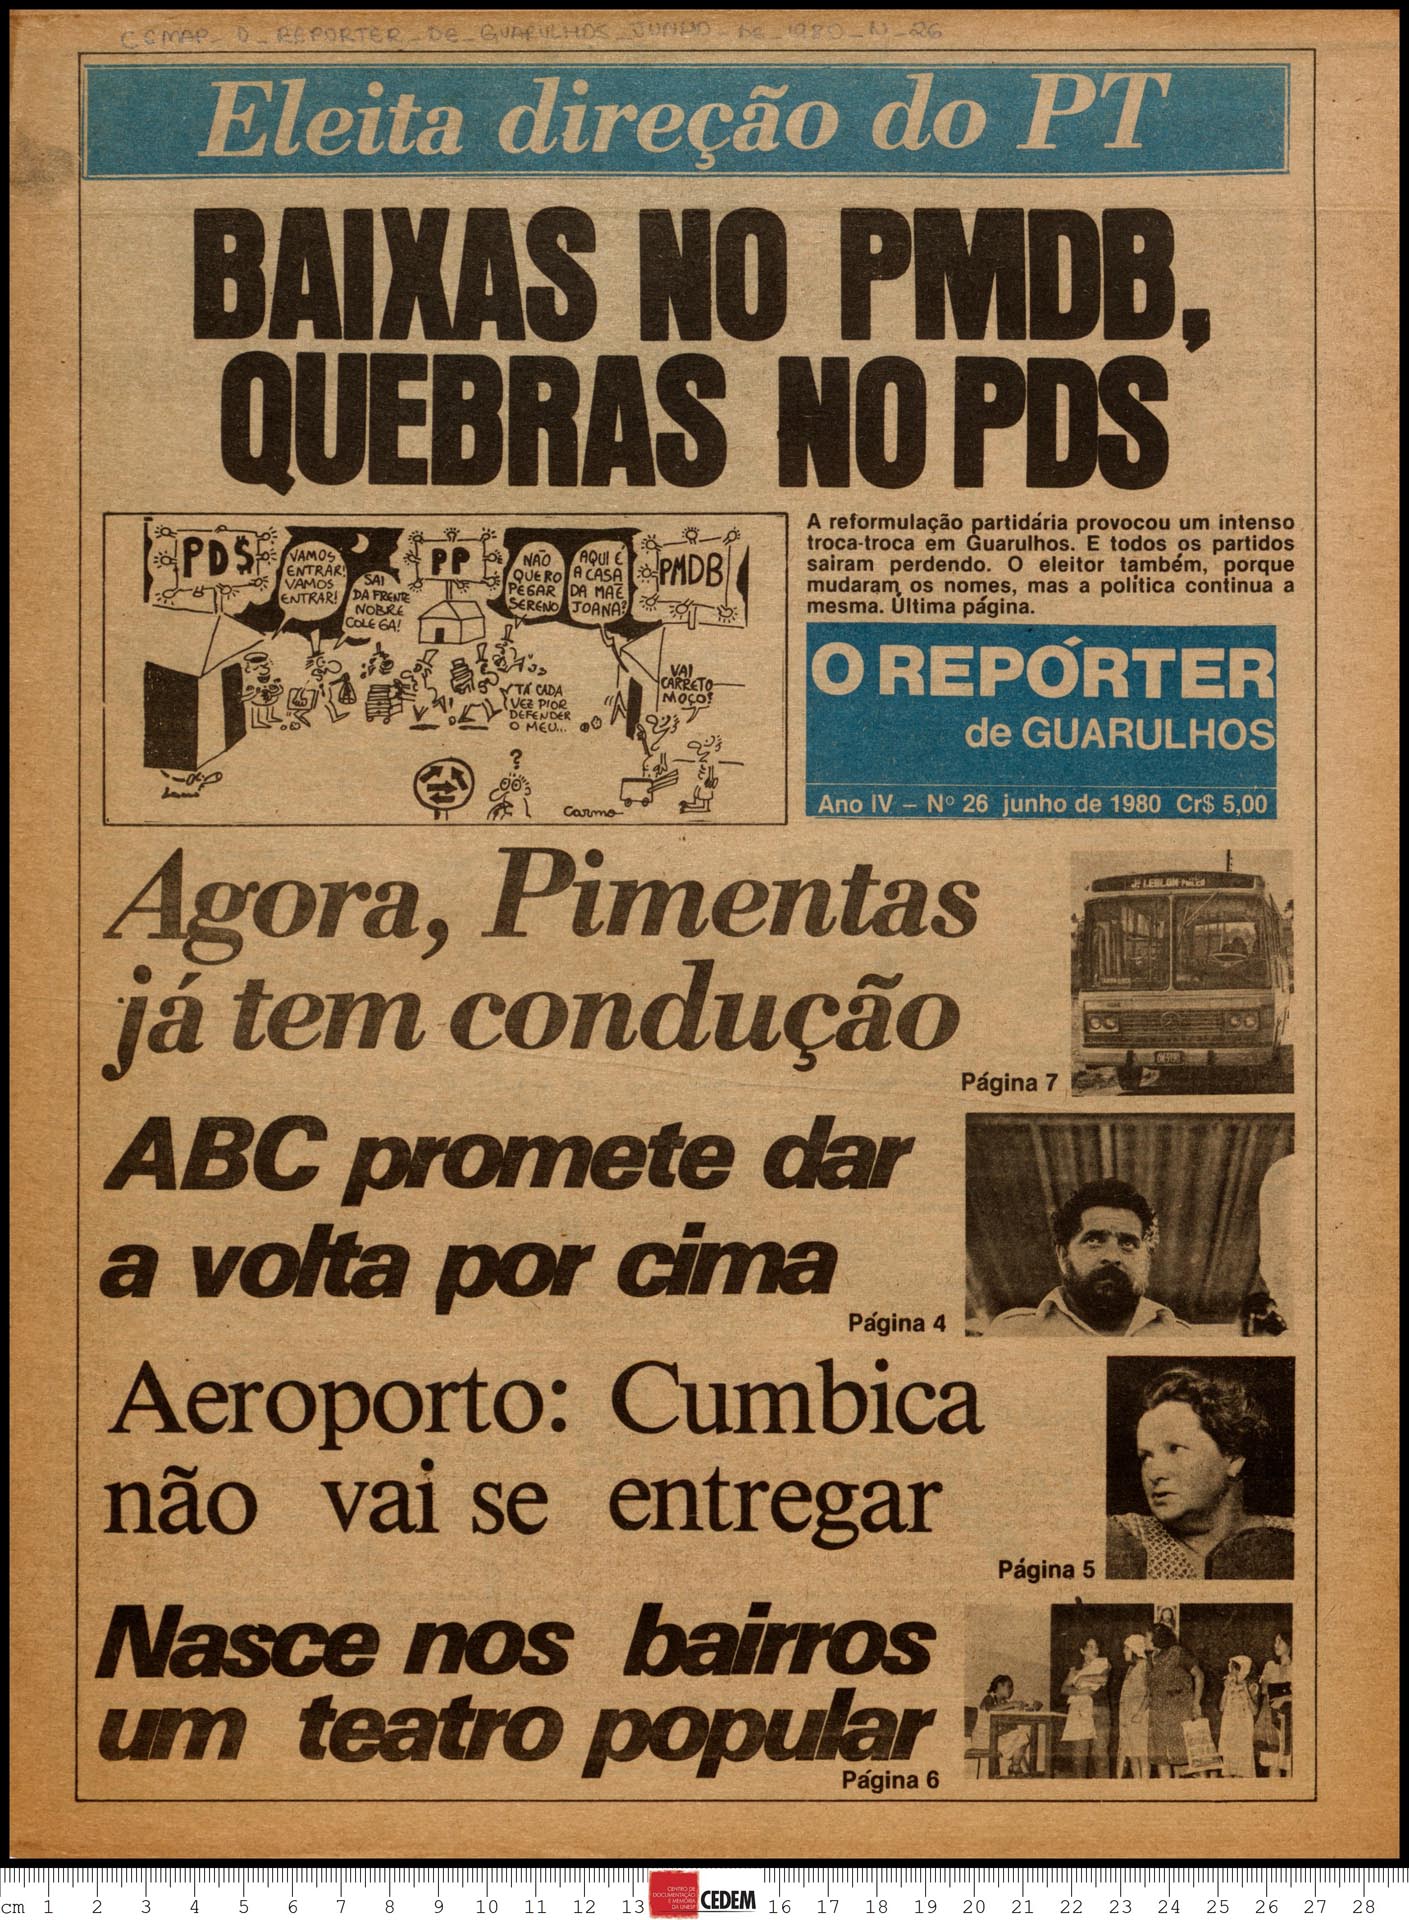 O reportér de Guarulhos - 26 - jun. 1980